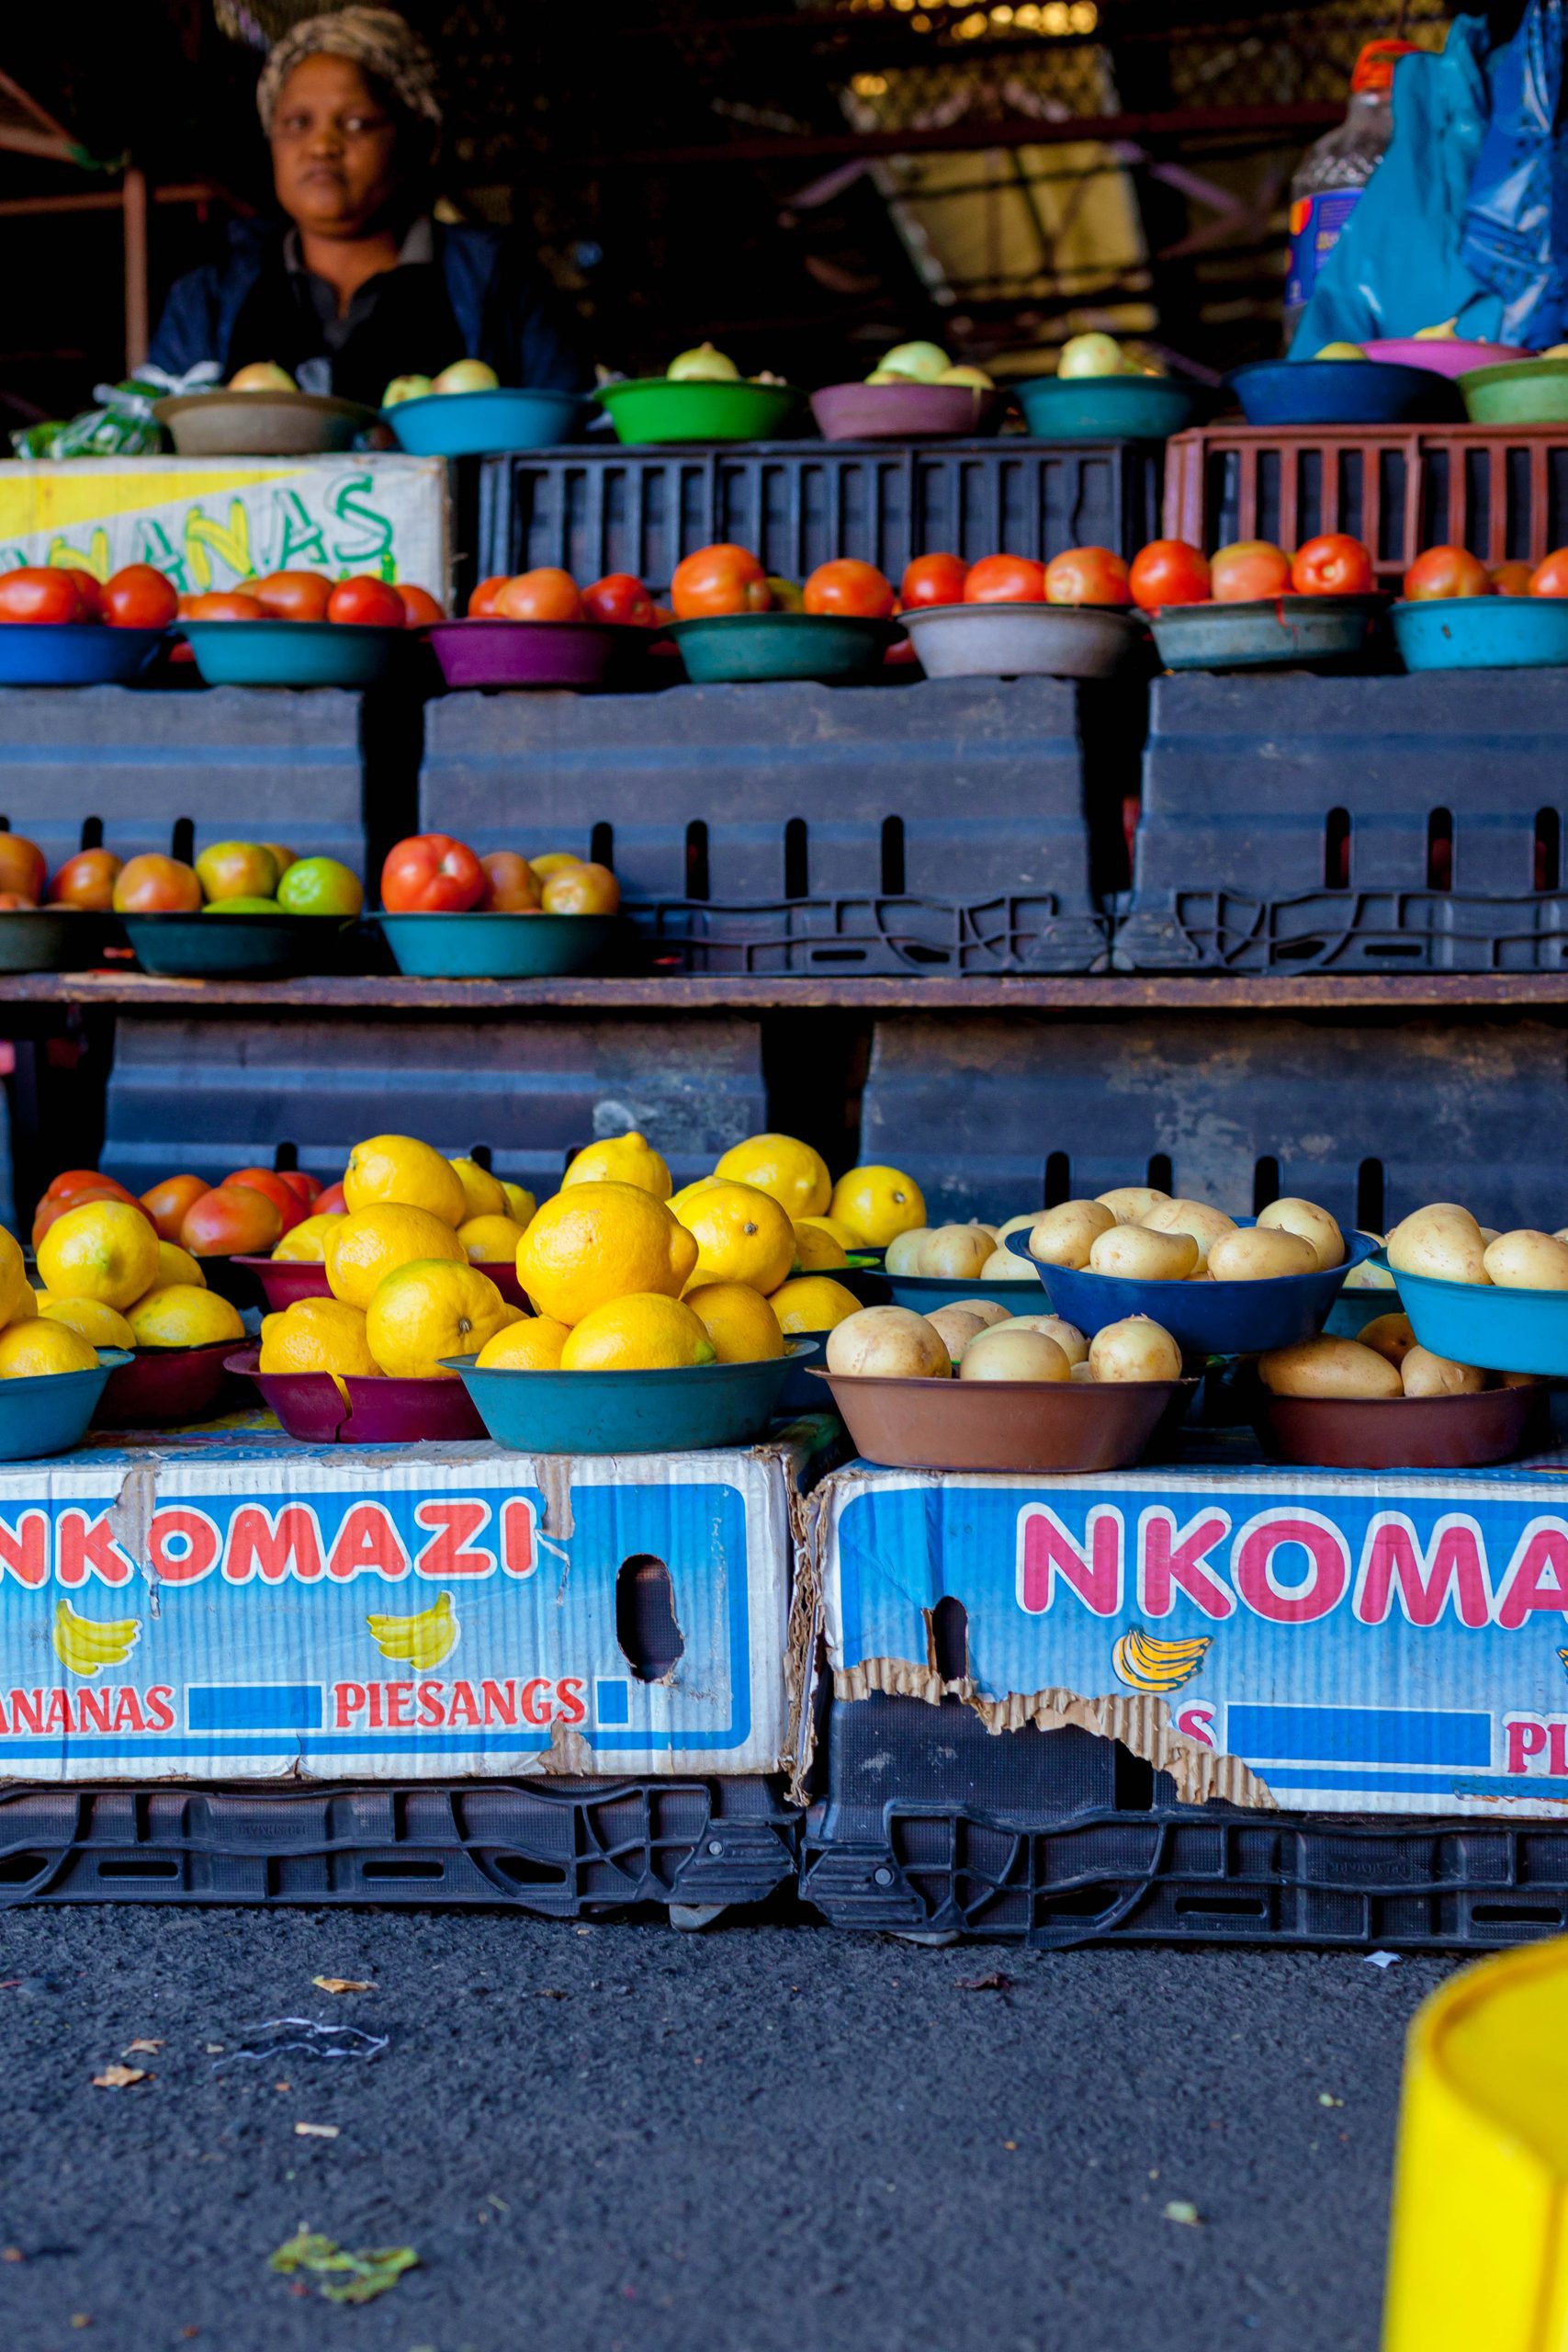 عرض المنتجات في سوق الصباح الباكر في بلدية إي ثيكويني، ديربان، جنوب أفريقيا